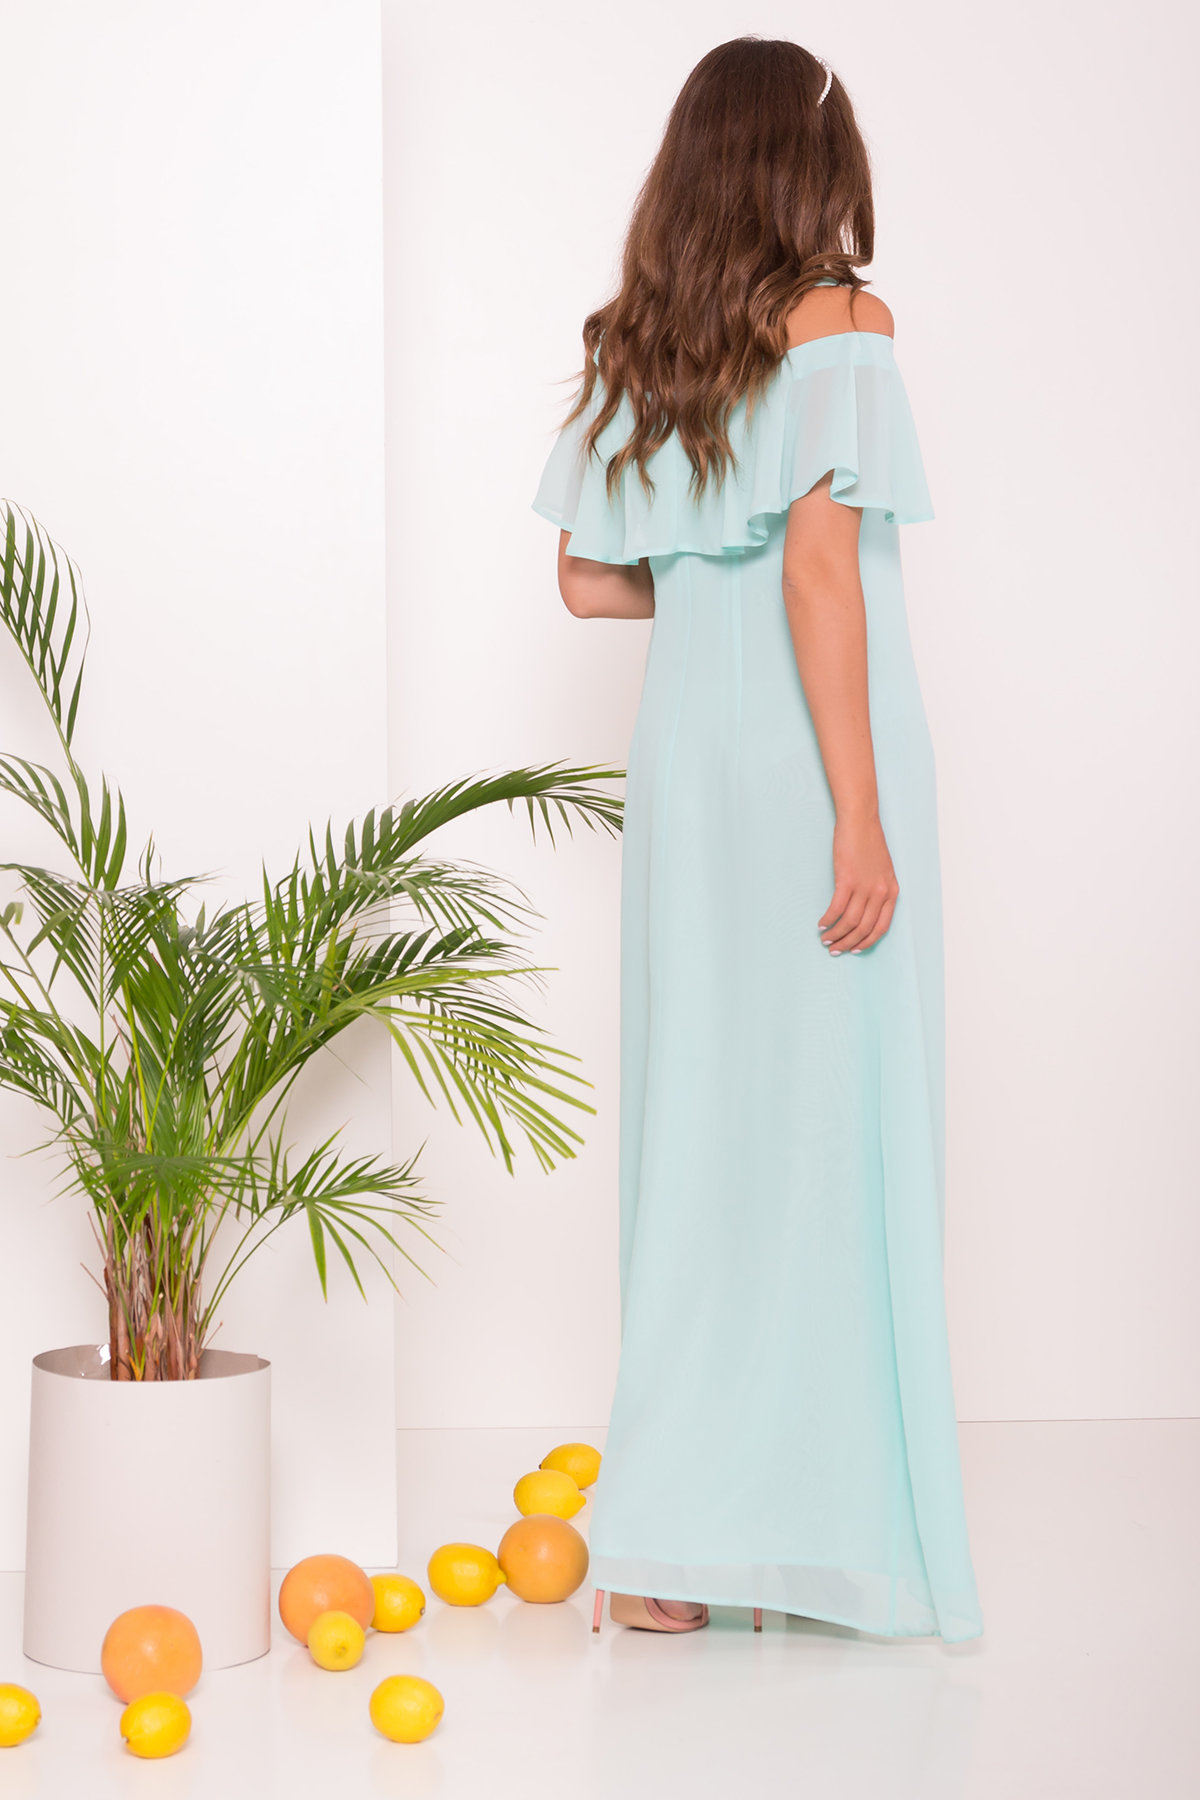 Платье Пикабу 7449 АРТ. 43243 Цвет: Мята - фото 4, интернет магазин tm-modus.ru